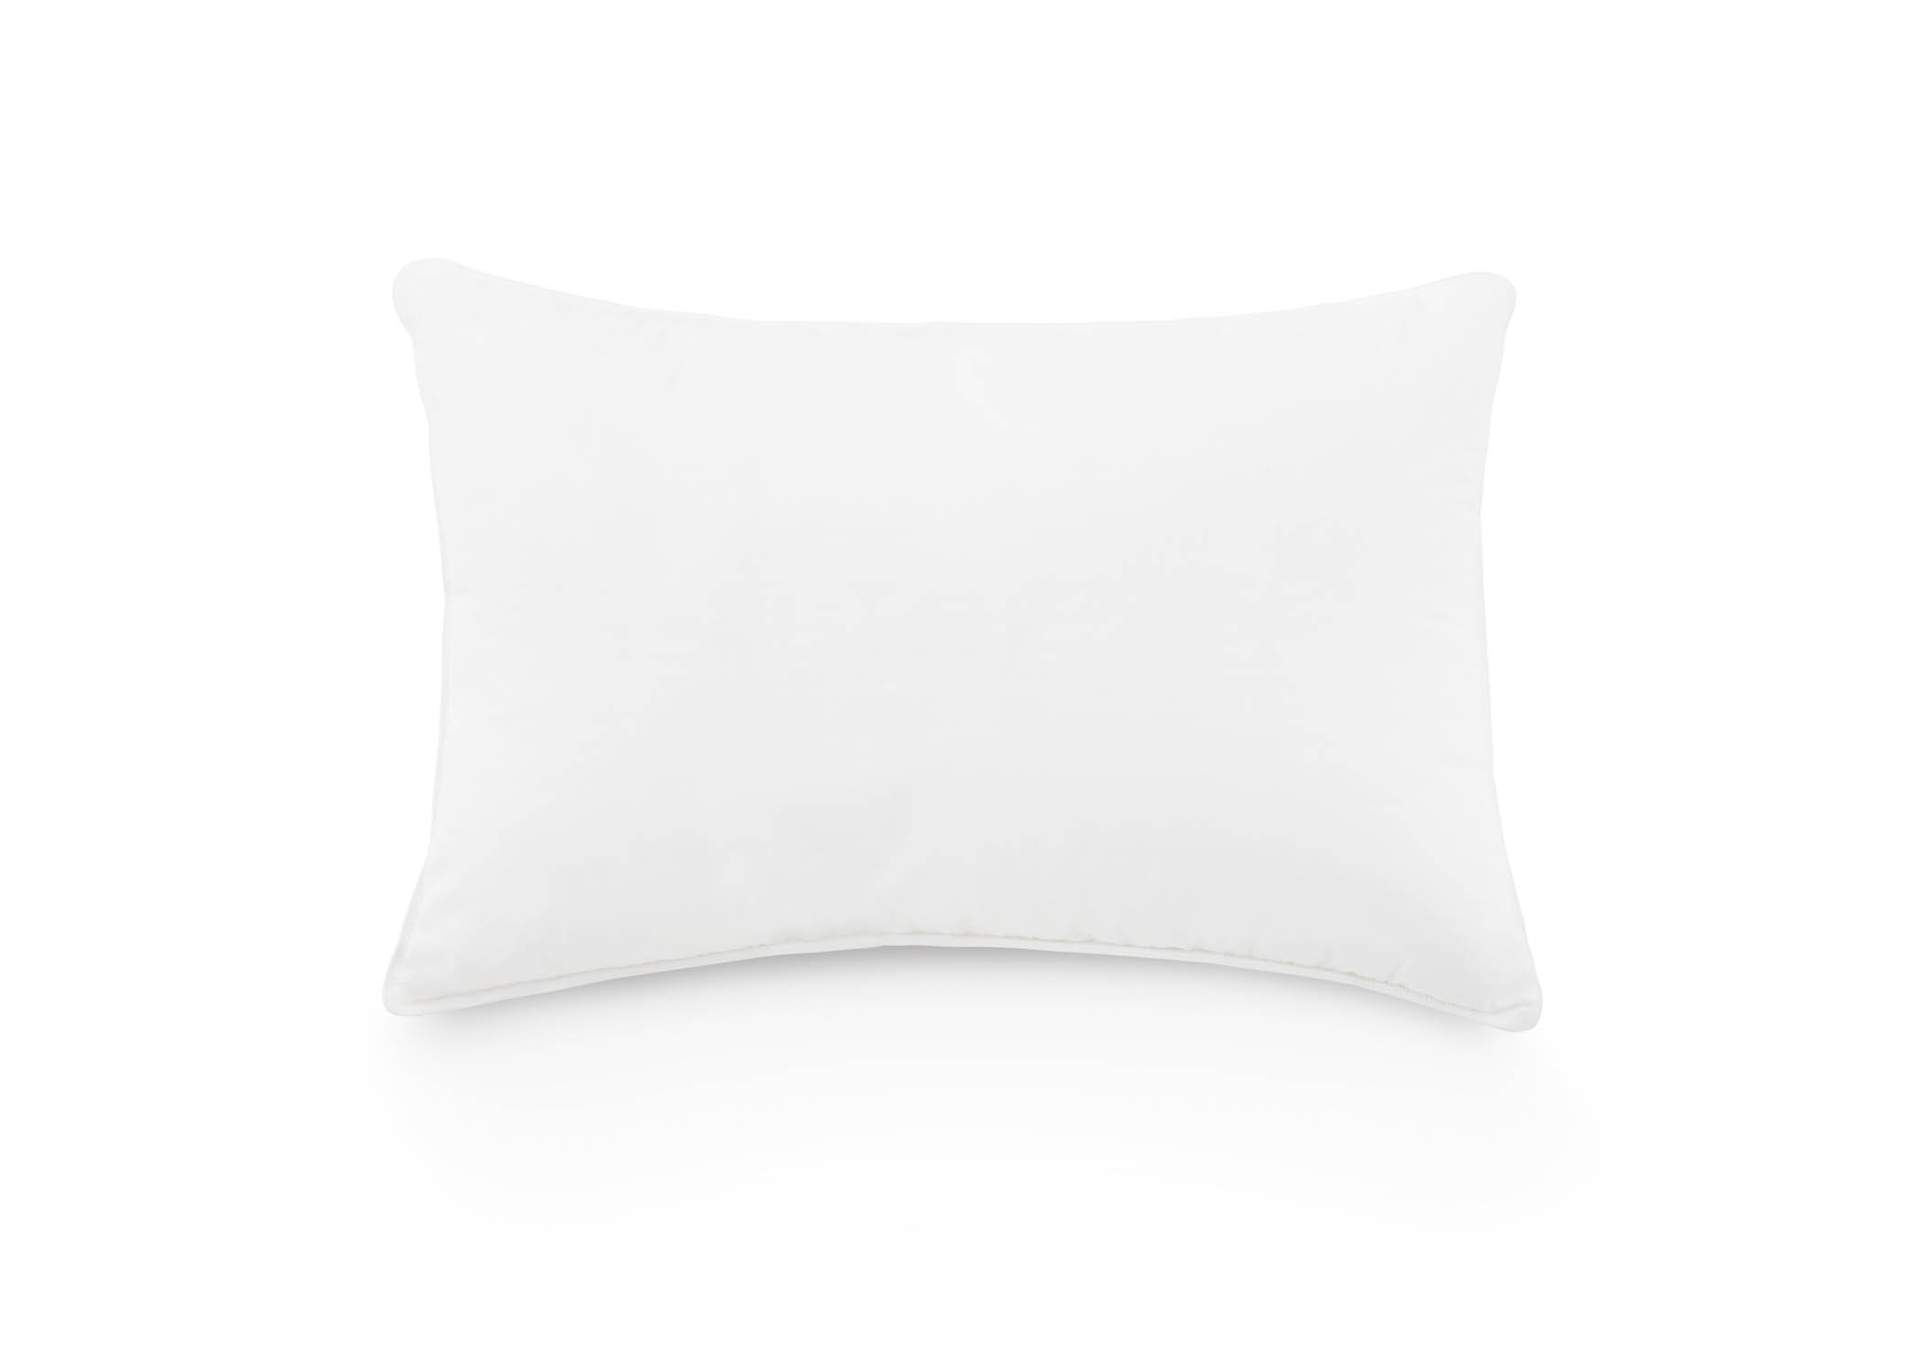 Weekender Down Blend Pillow - Standard Size,Malouf